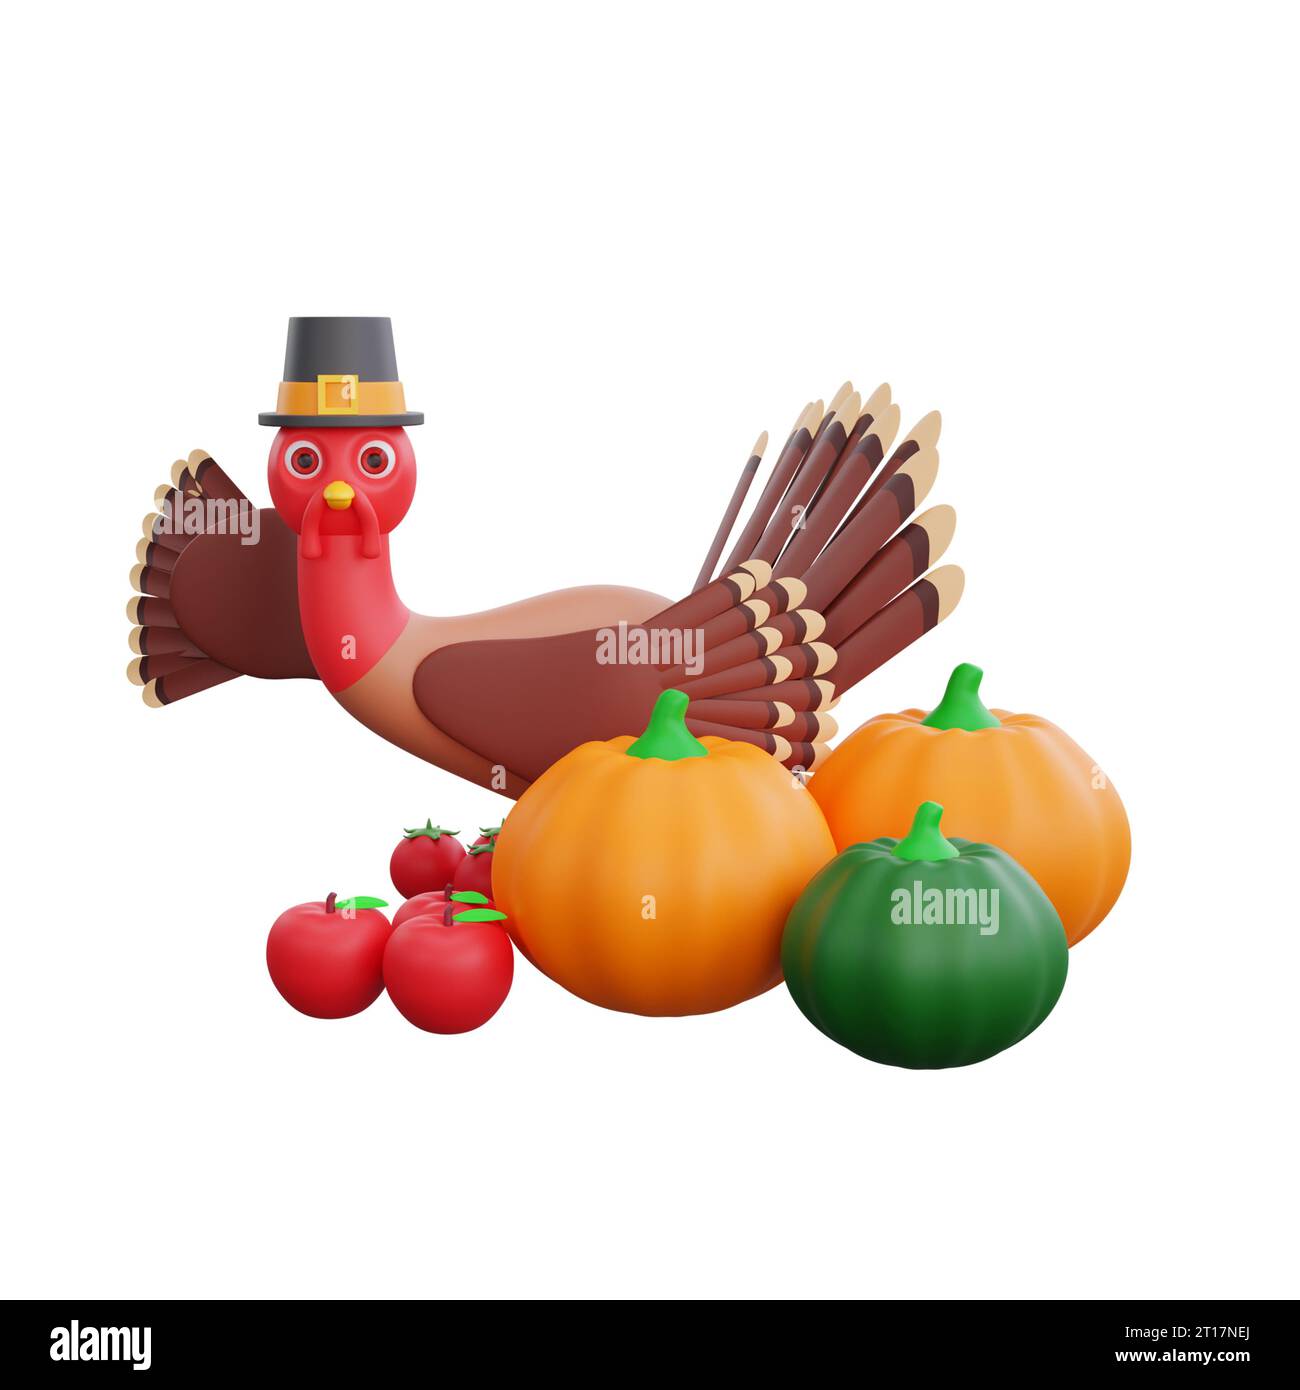 3D-truthahn mit Pilgermütze sagt Hallo. Der truthahn ist von Kürbissen, Äpfeln und Tomaten umgeben. Das perfekte Design für ein Thanksgiving-Design Stockfoto